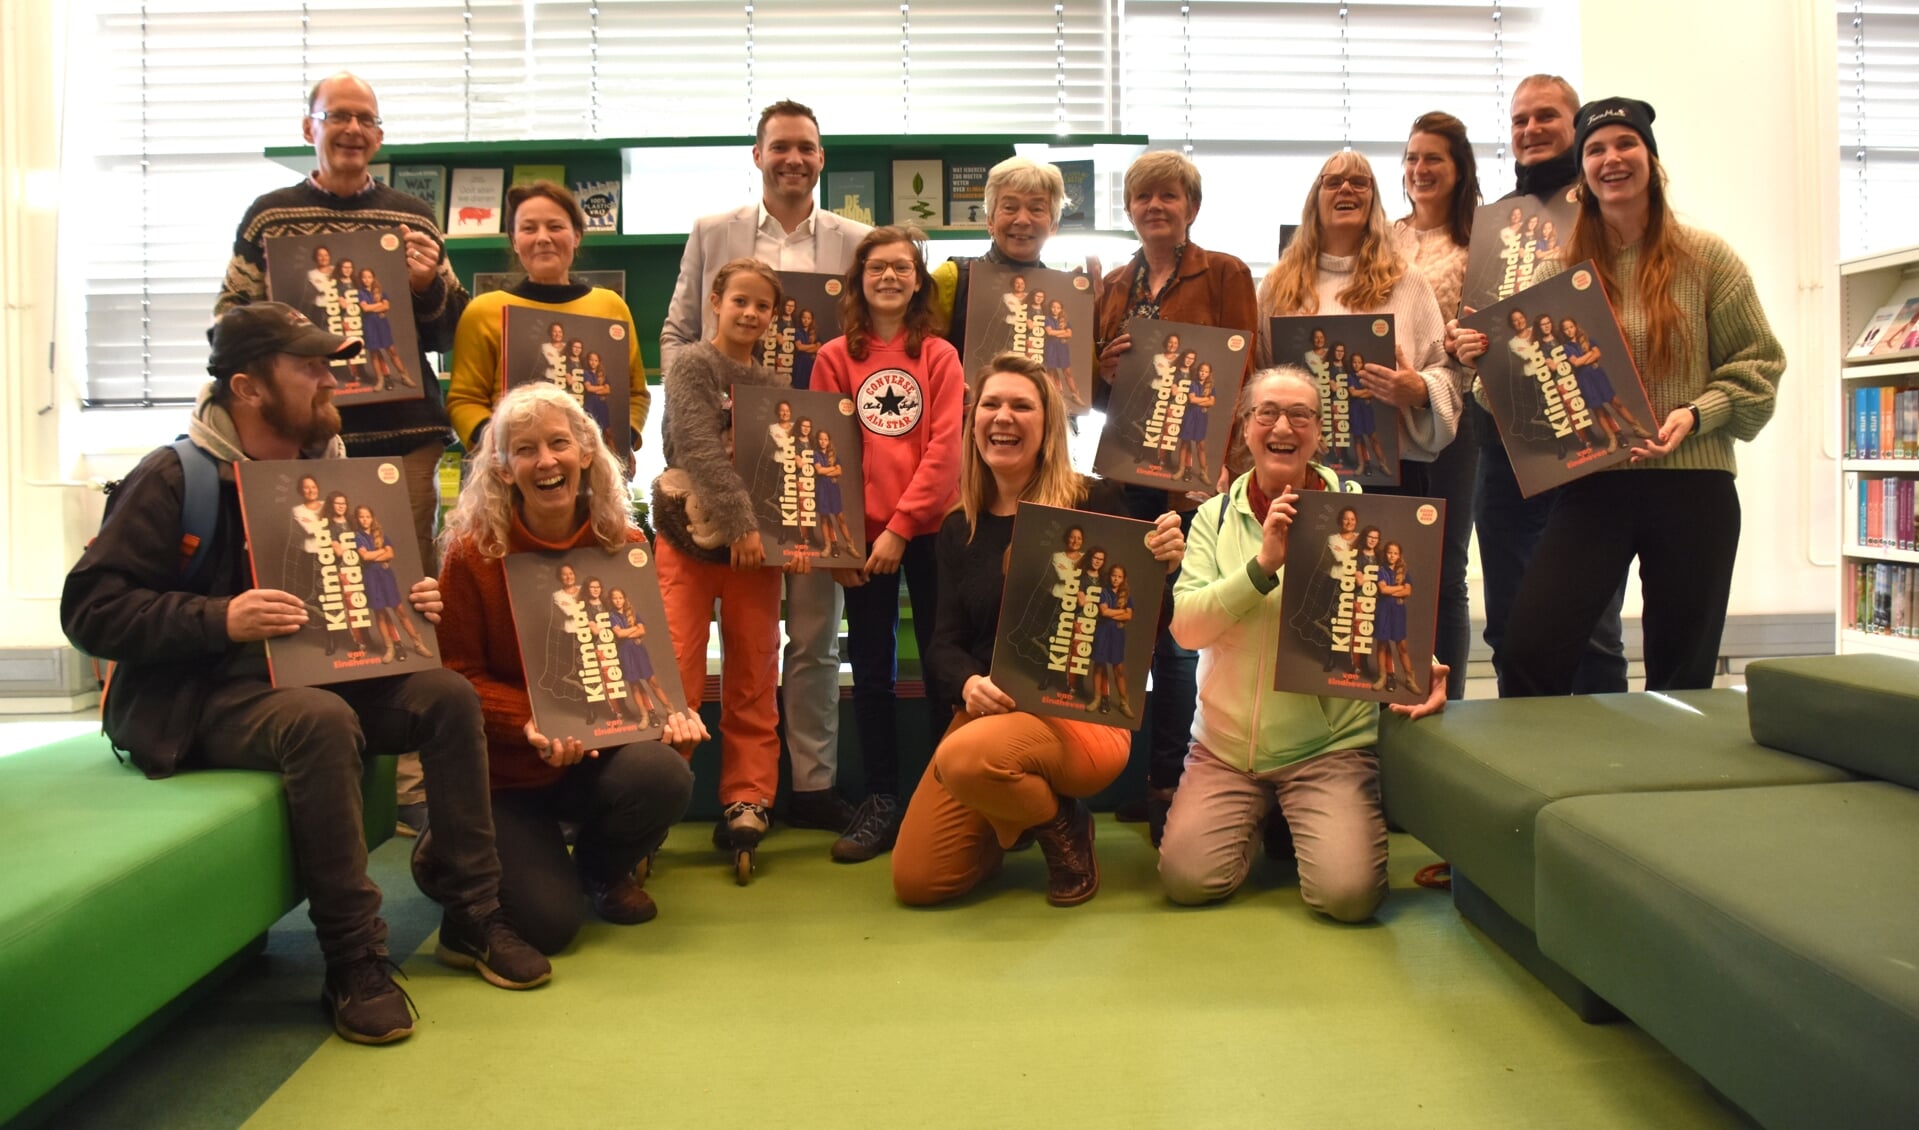 Wethouder Rik Thijs, de klimaatburgermeesters en de klimaathelden ontvingen het doorgeefboek Klimaatheldenboek. FOTO: StudioSabo.